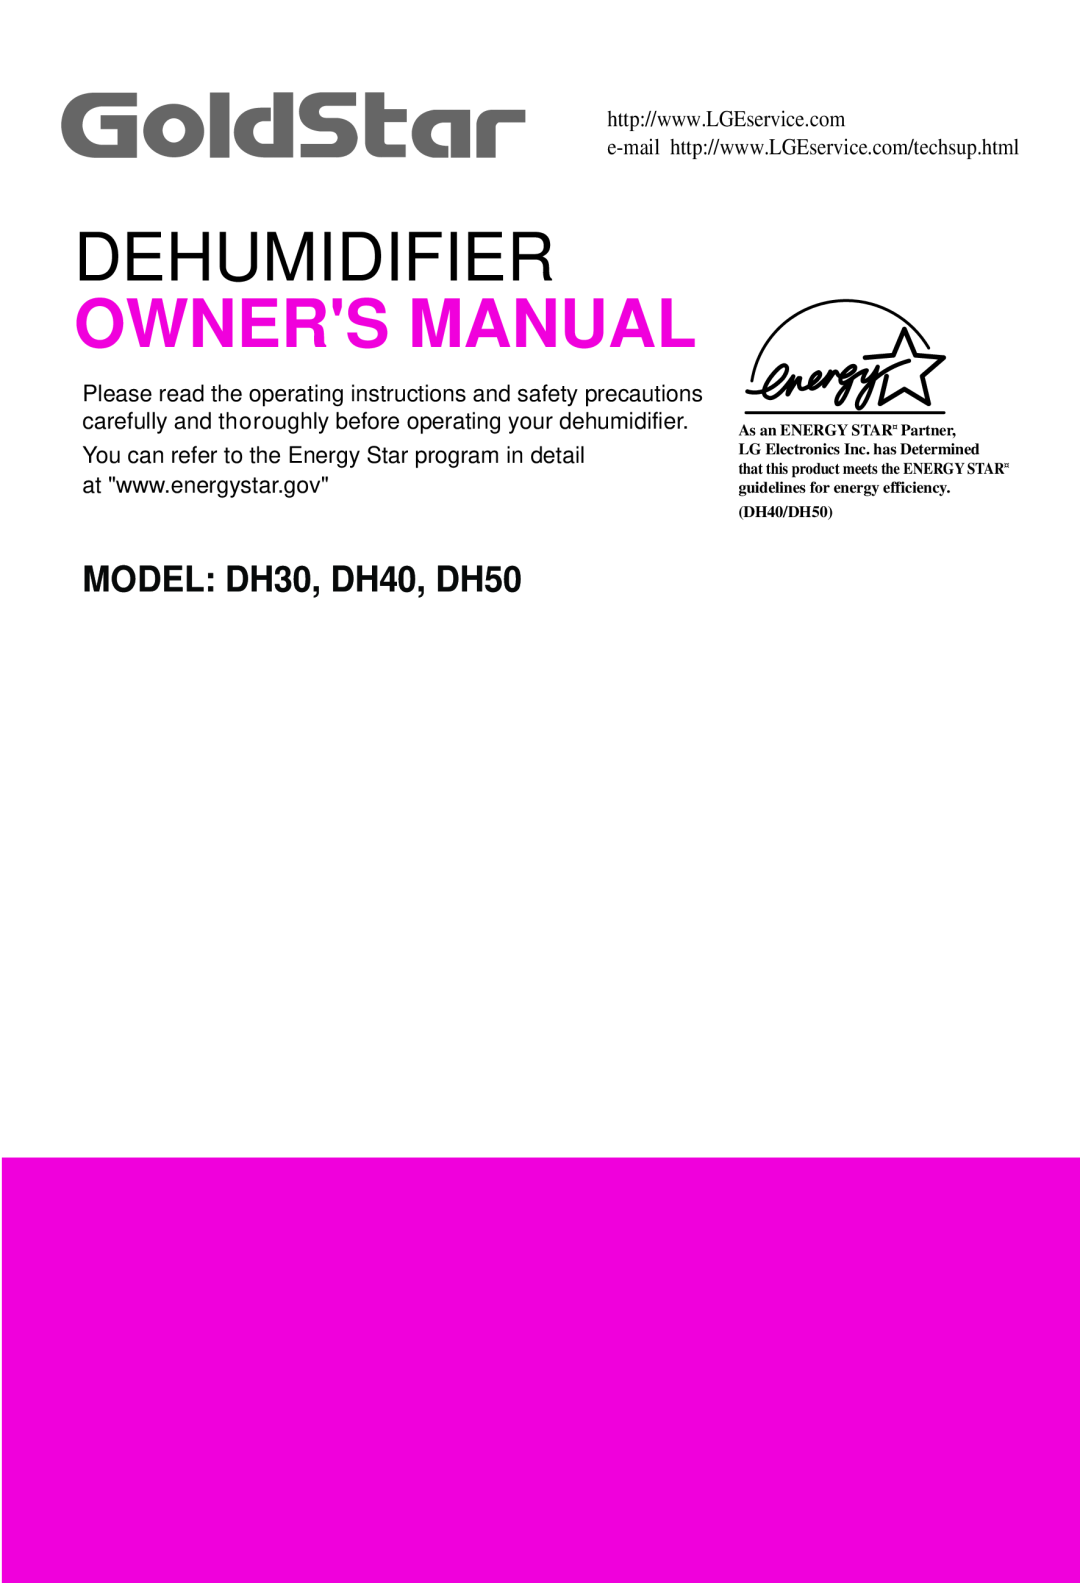 Goldstar owner manual Dehumidifier, MODEL DH30, DH40, DH50, DH40/DH50 